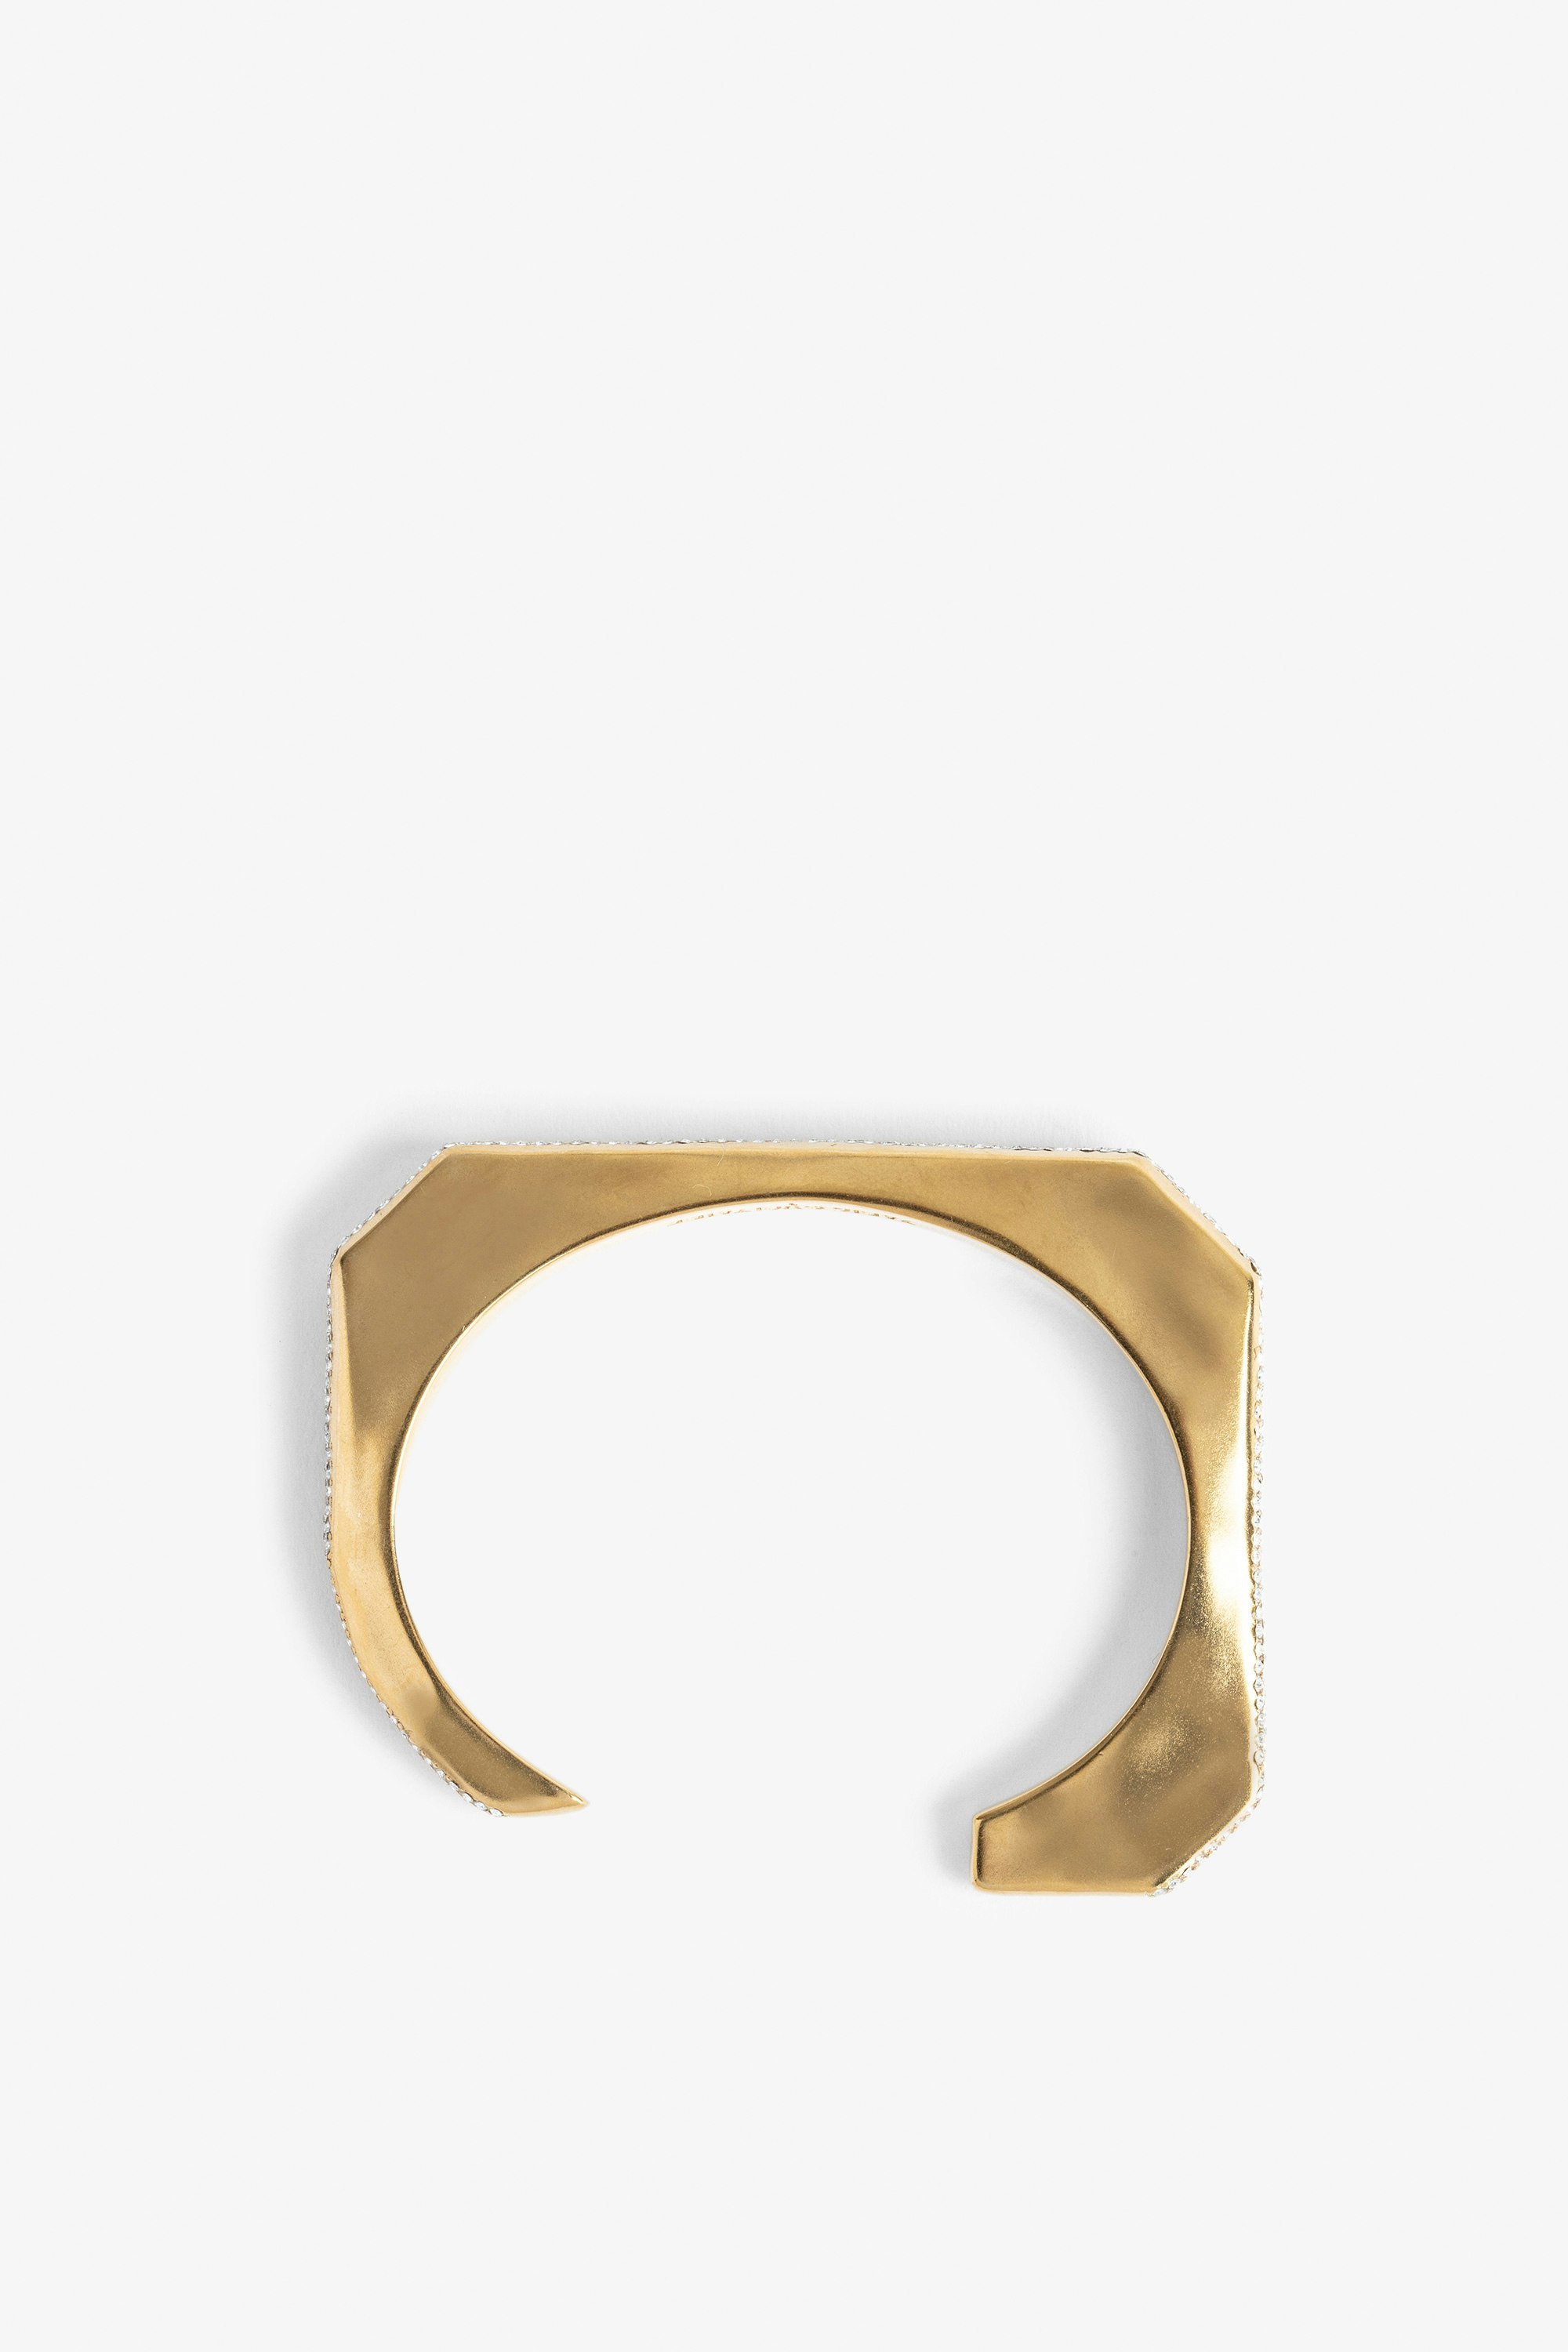 Cecilia Strass Bracelet - Gilded brass C-shaped bracelet embellished with crystals.